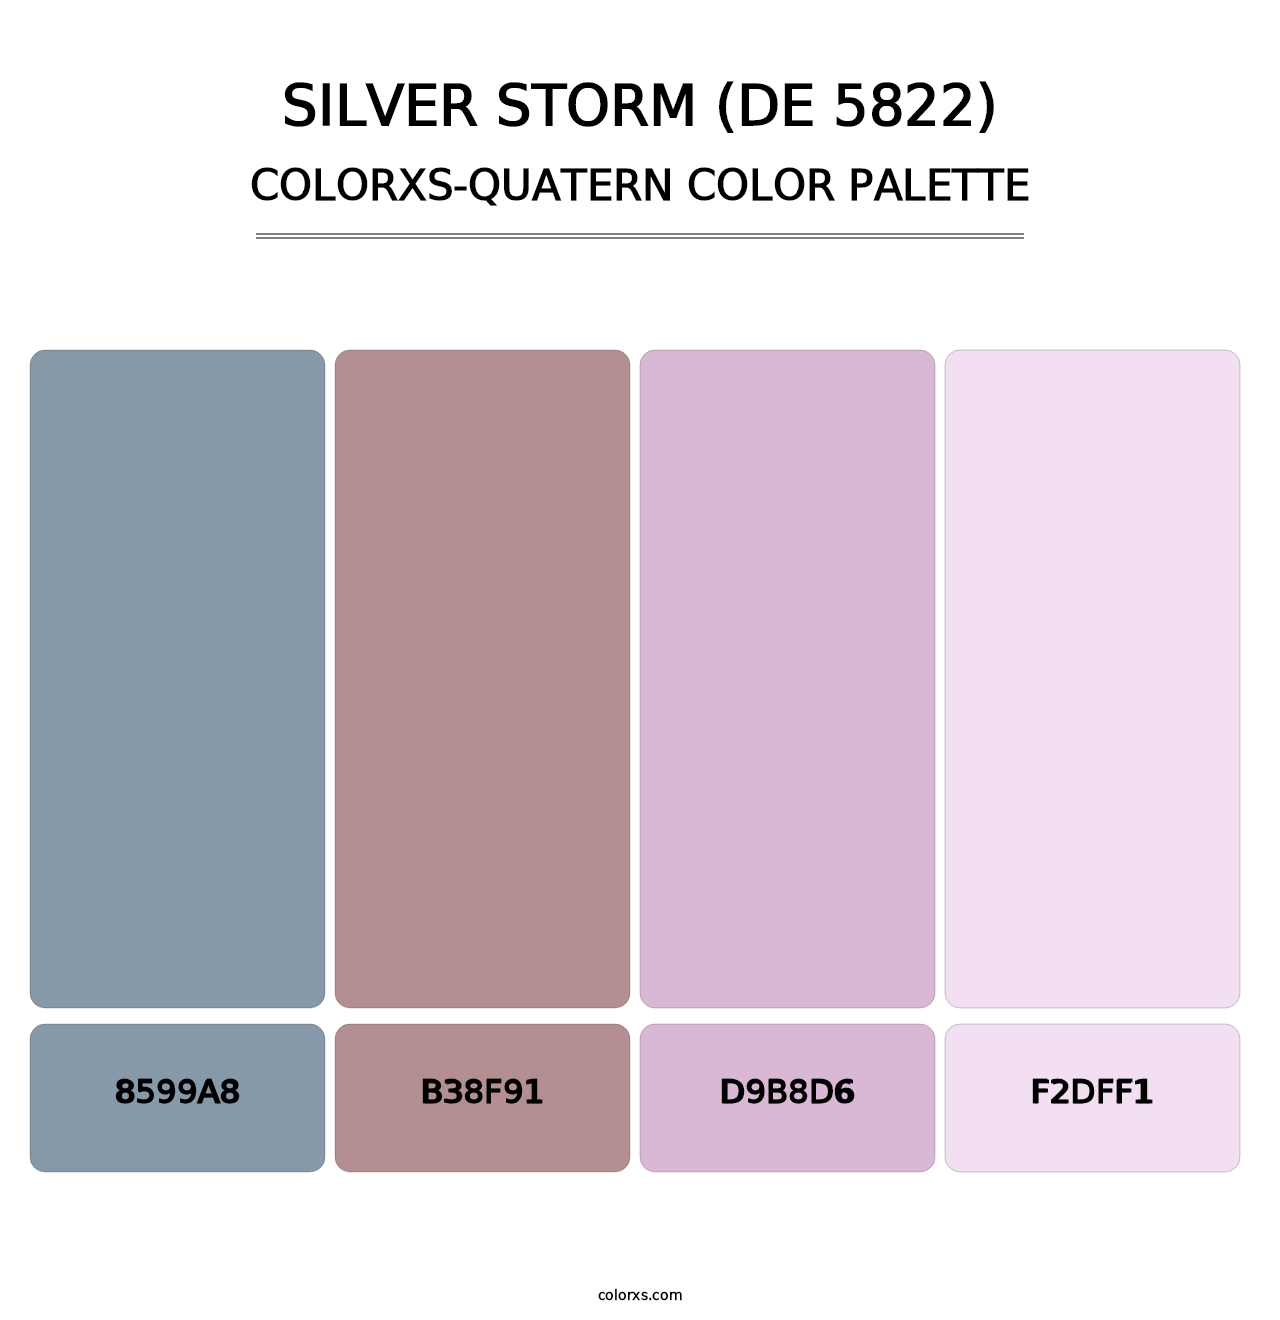 Silver Storm (DE 5822) - Colorxs Quatern Palette